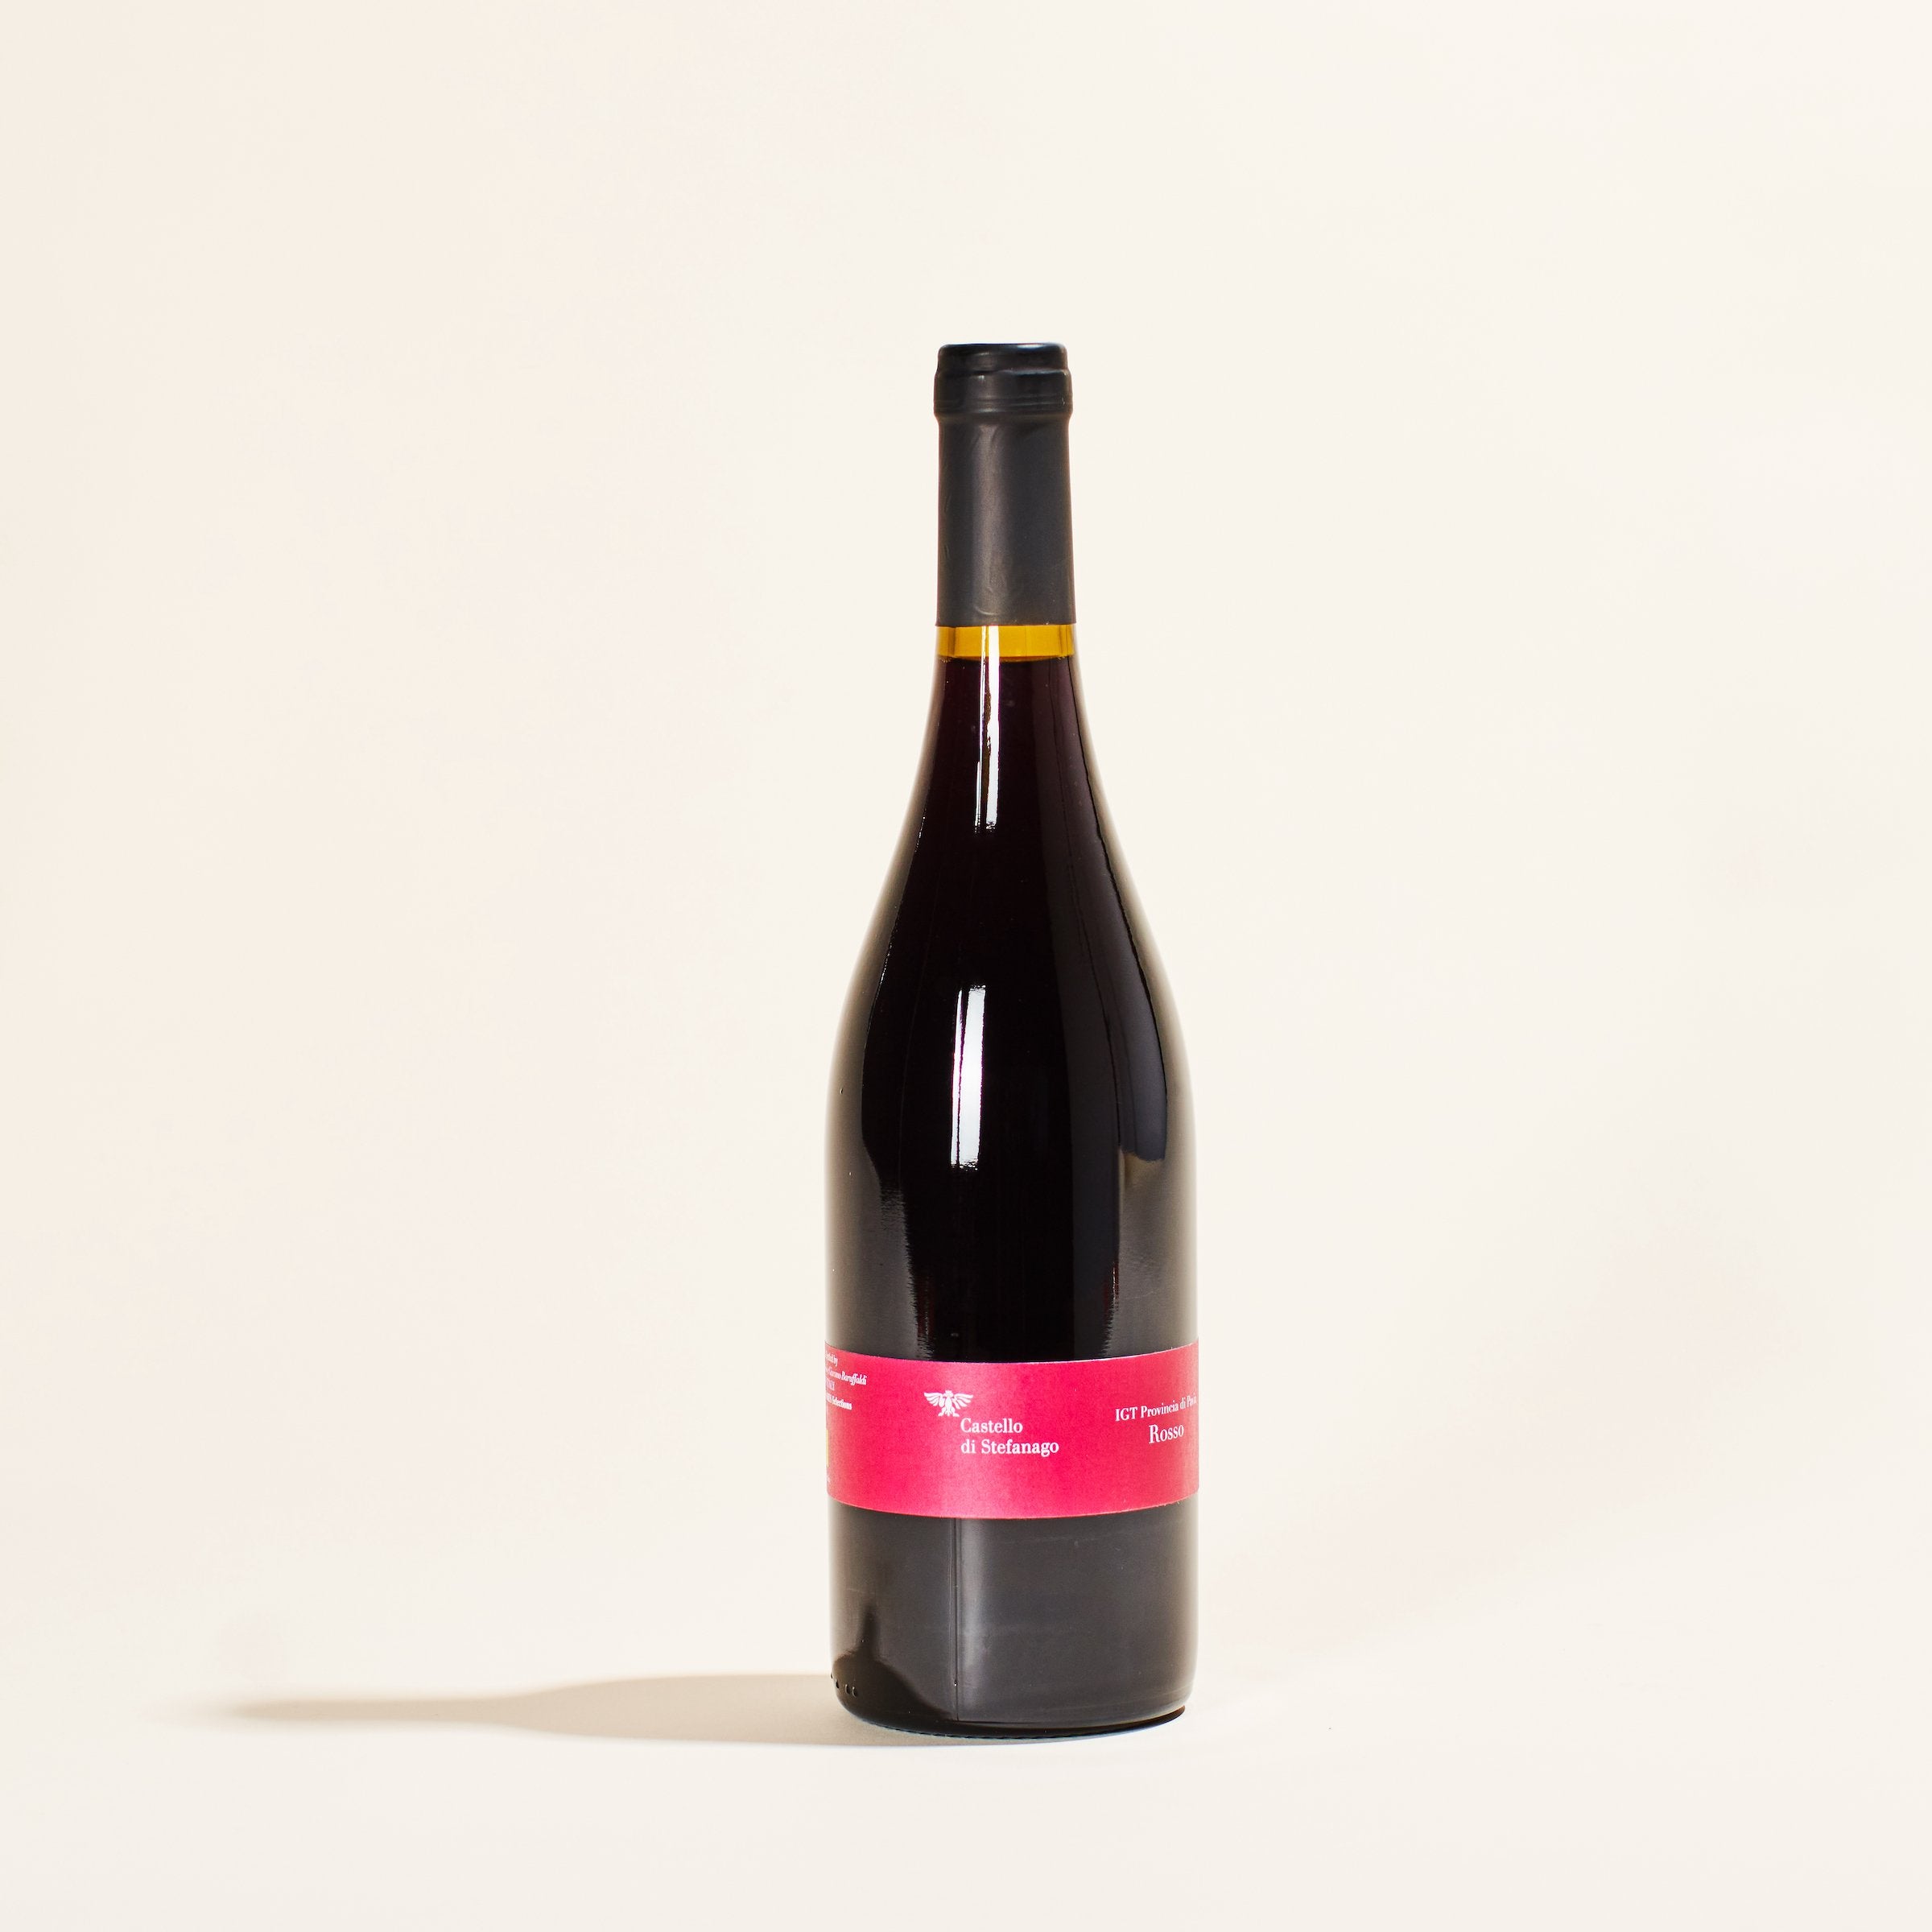 provincia di pavia rosso castello di stefanago lombardy italy natural red wine bottle